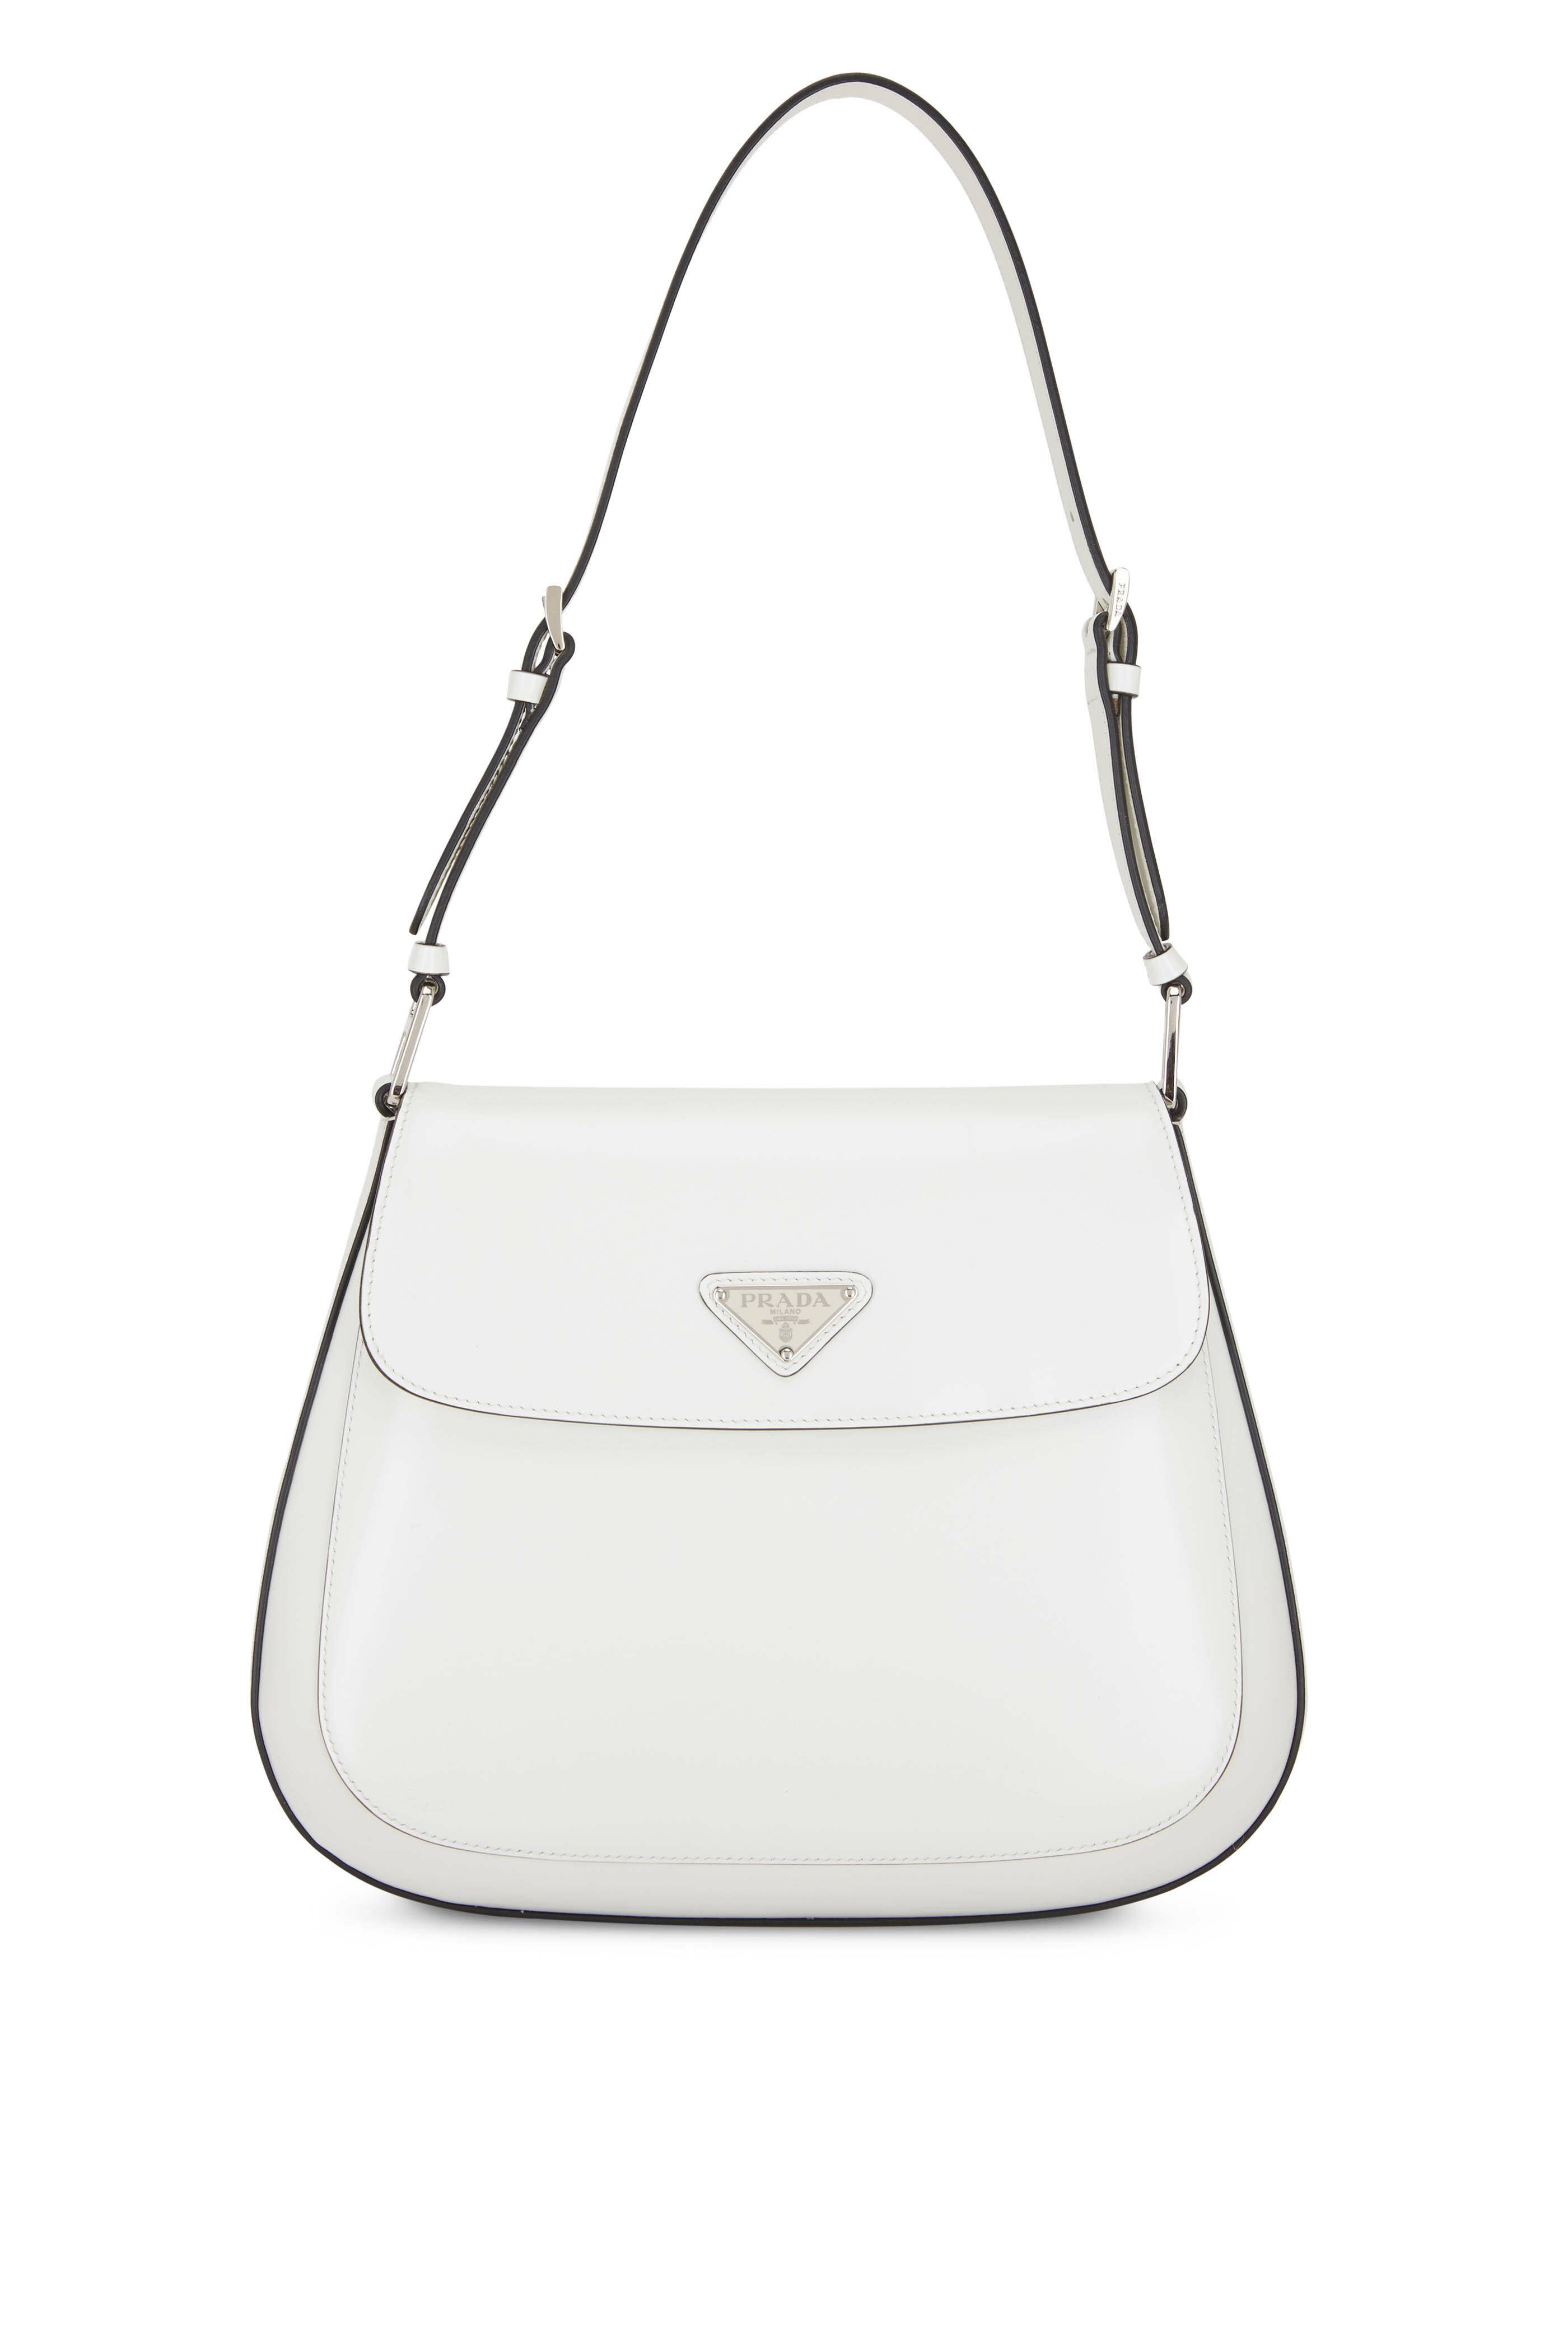 White Prada Cleo Brushed Leather Shoulder Bag